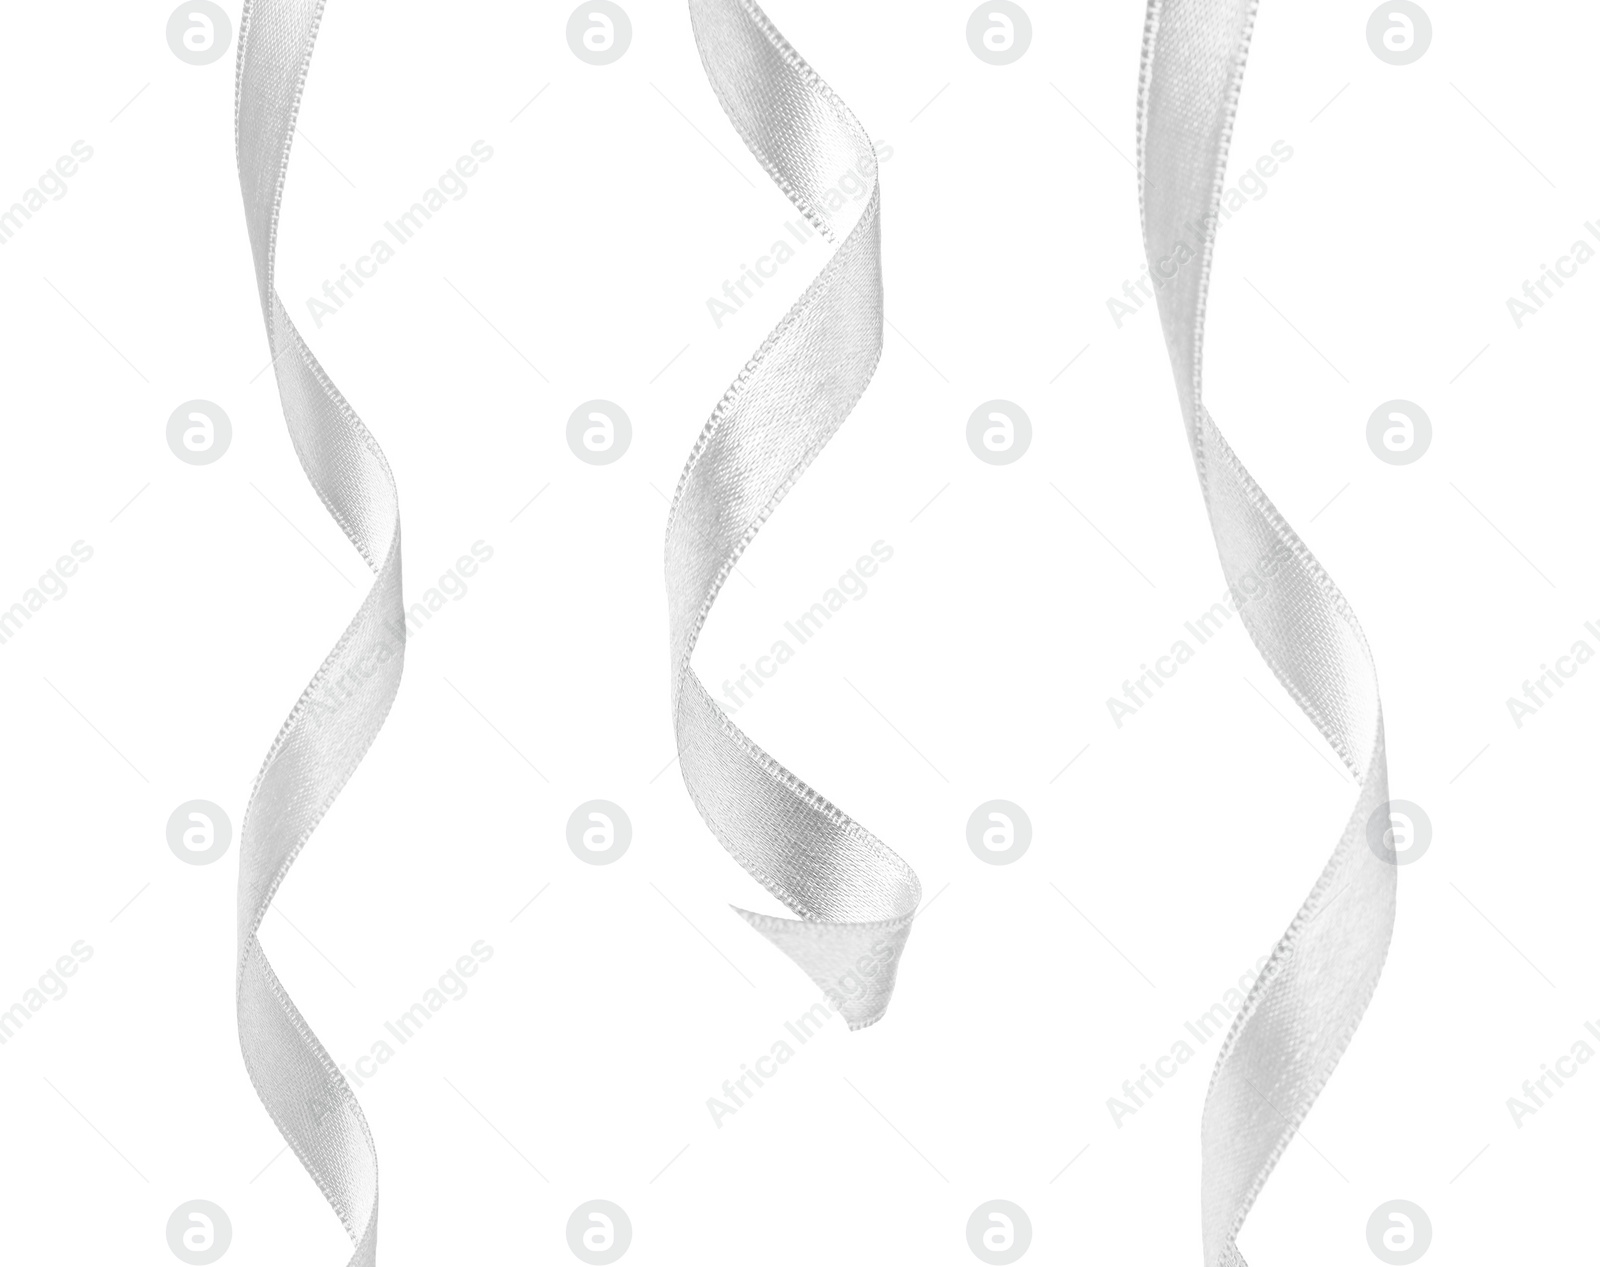 Image of White satin ribbons isolated on white, set